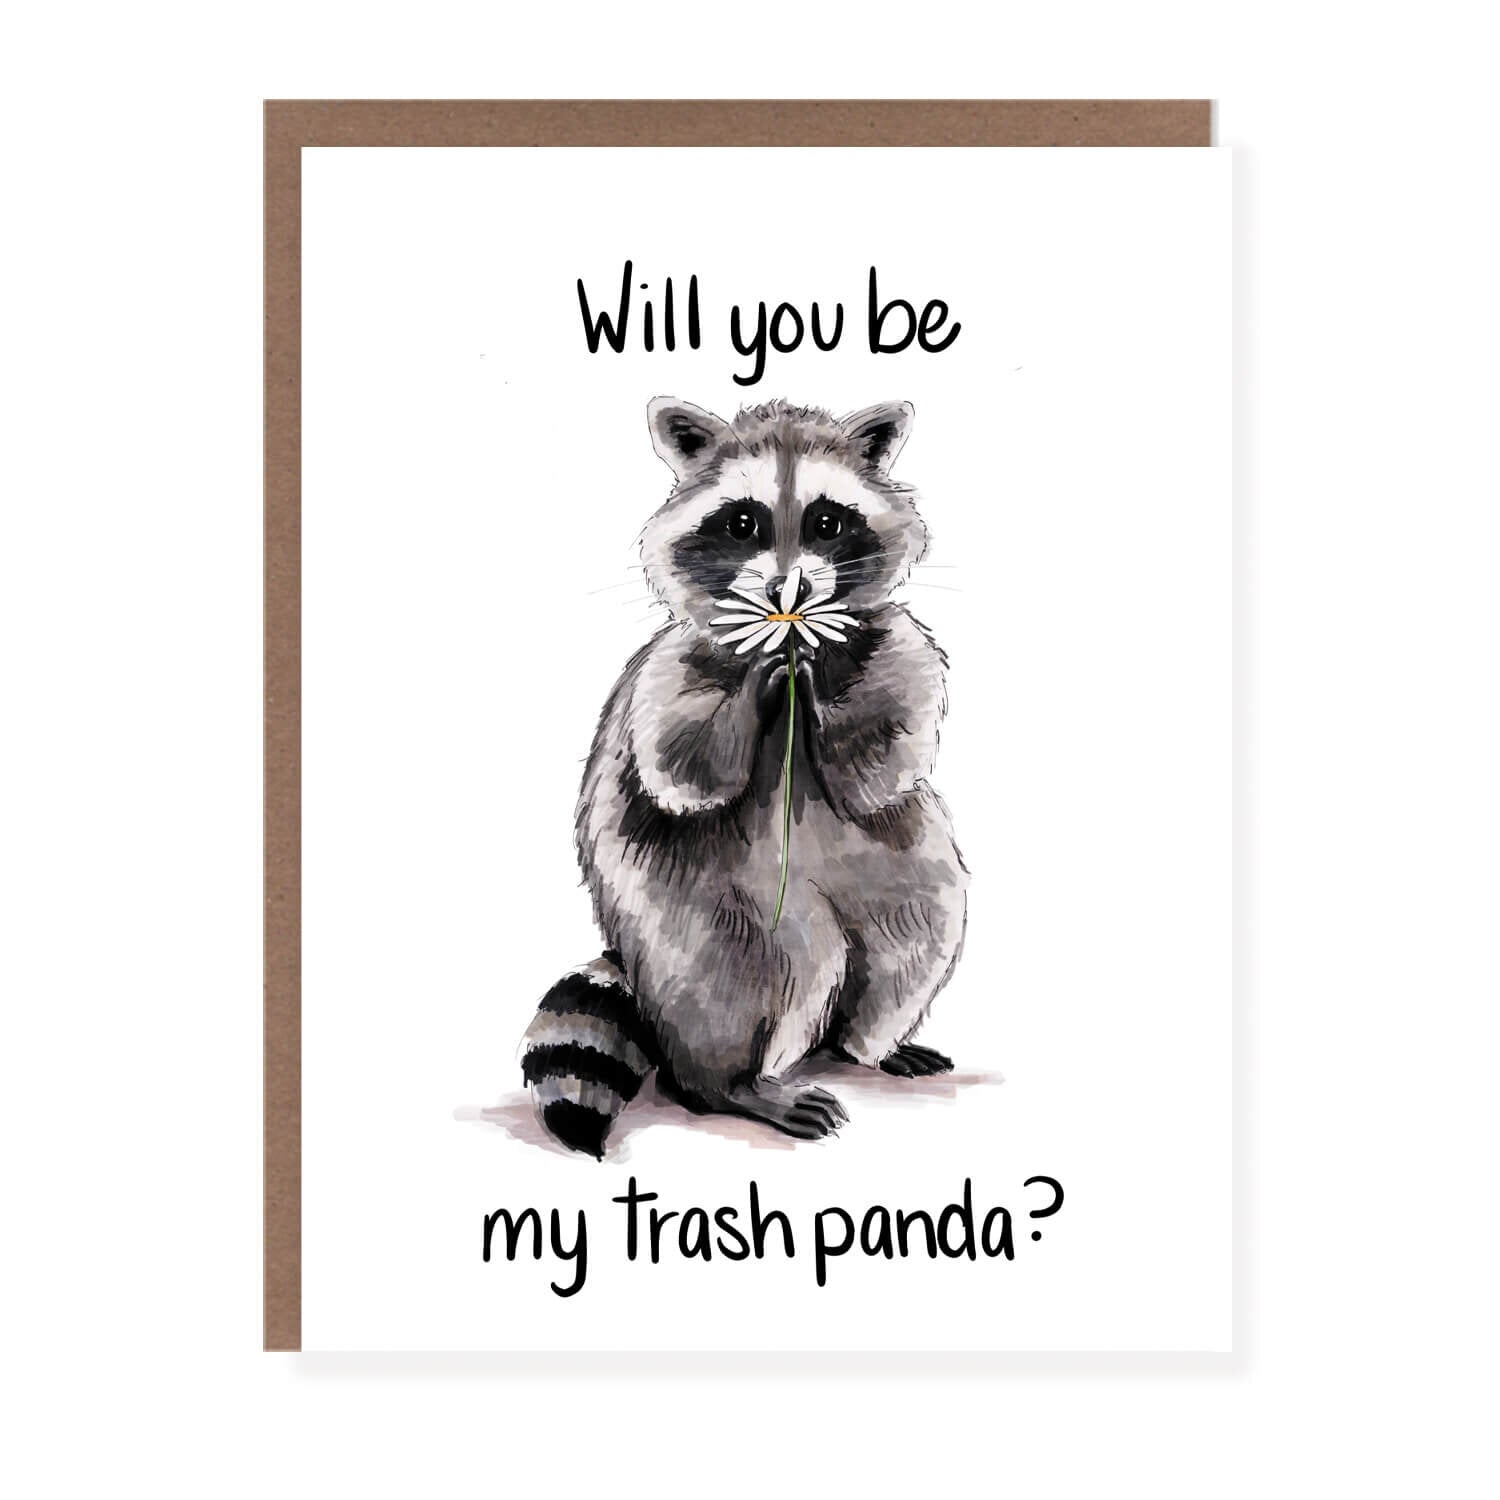 Trash Panda Card